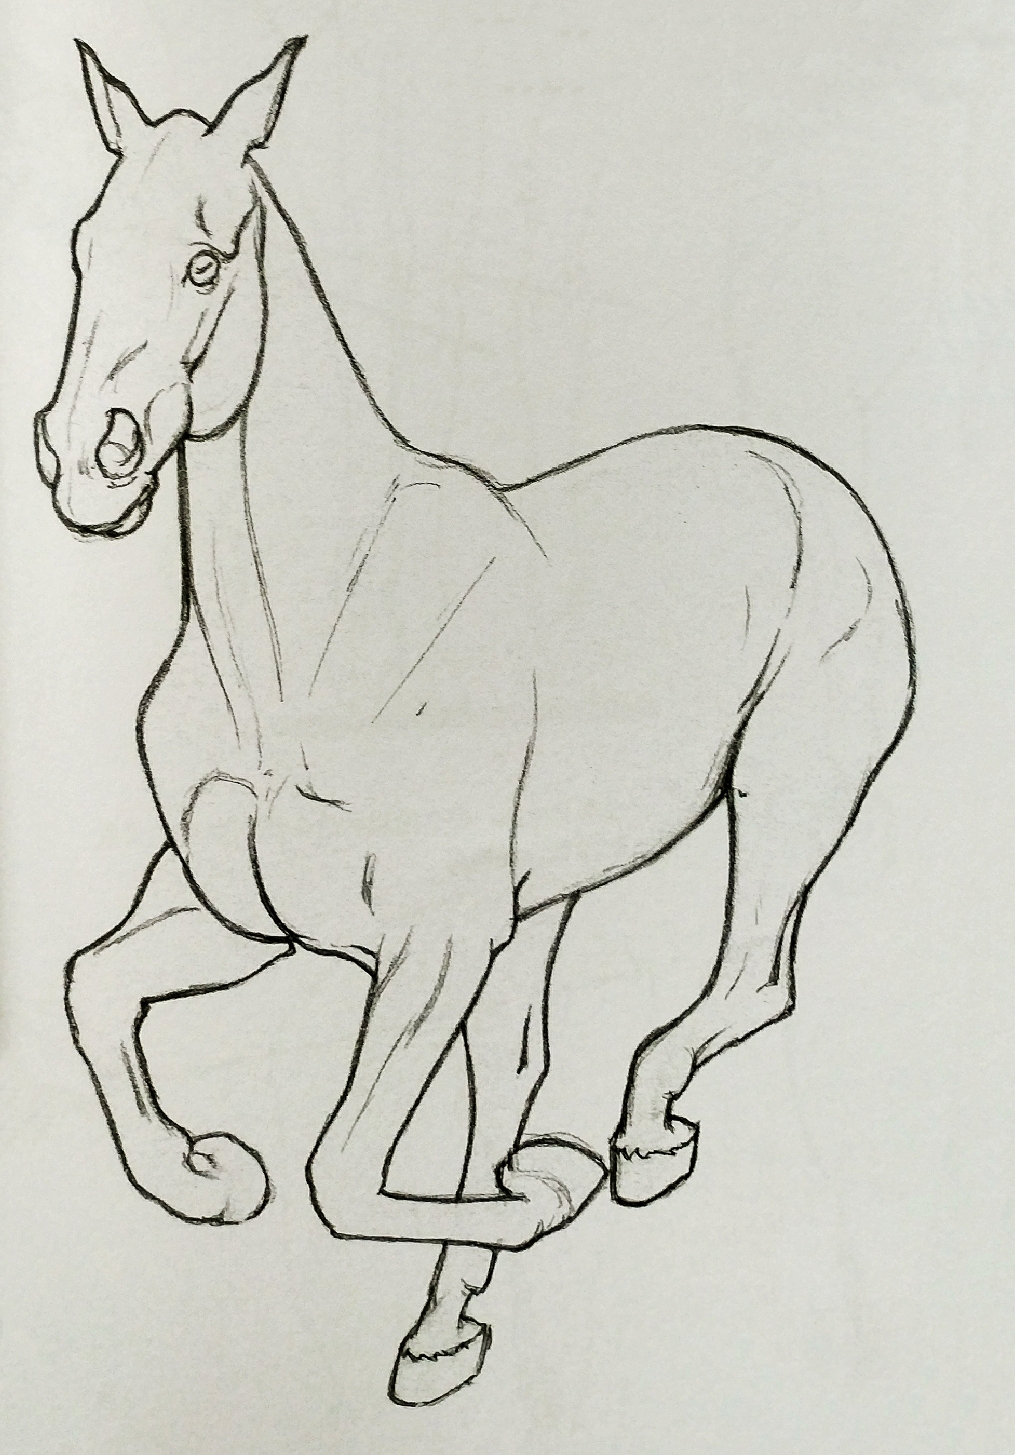 怎么画马有名图片